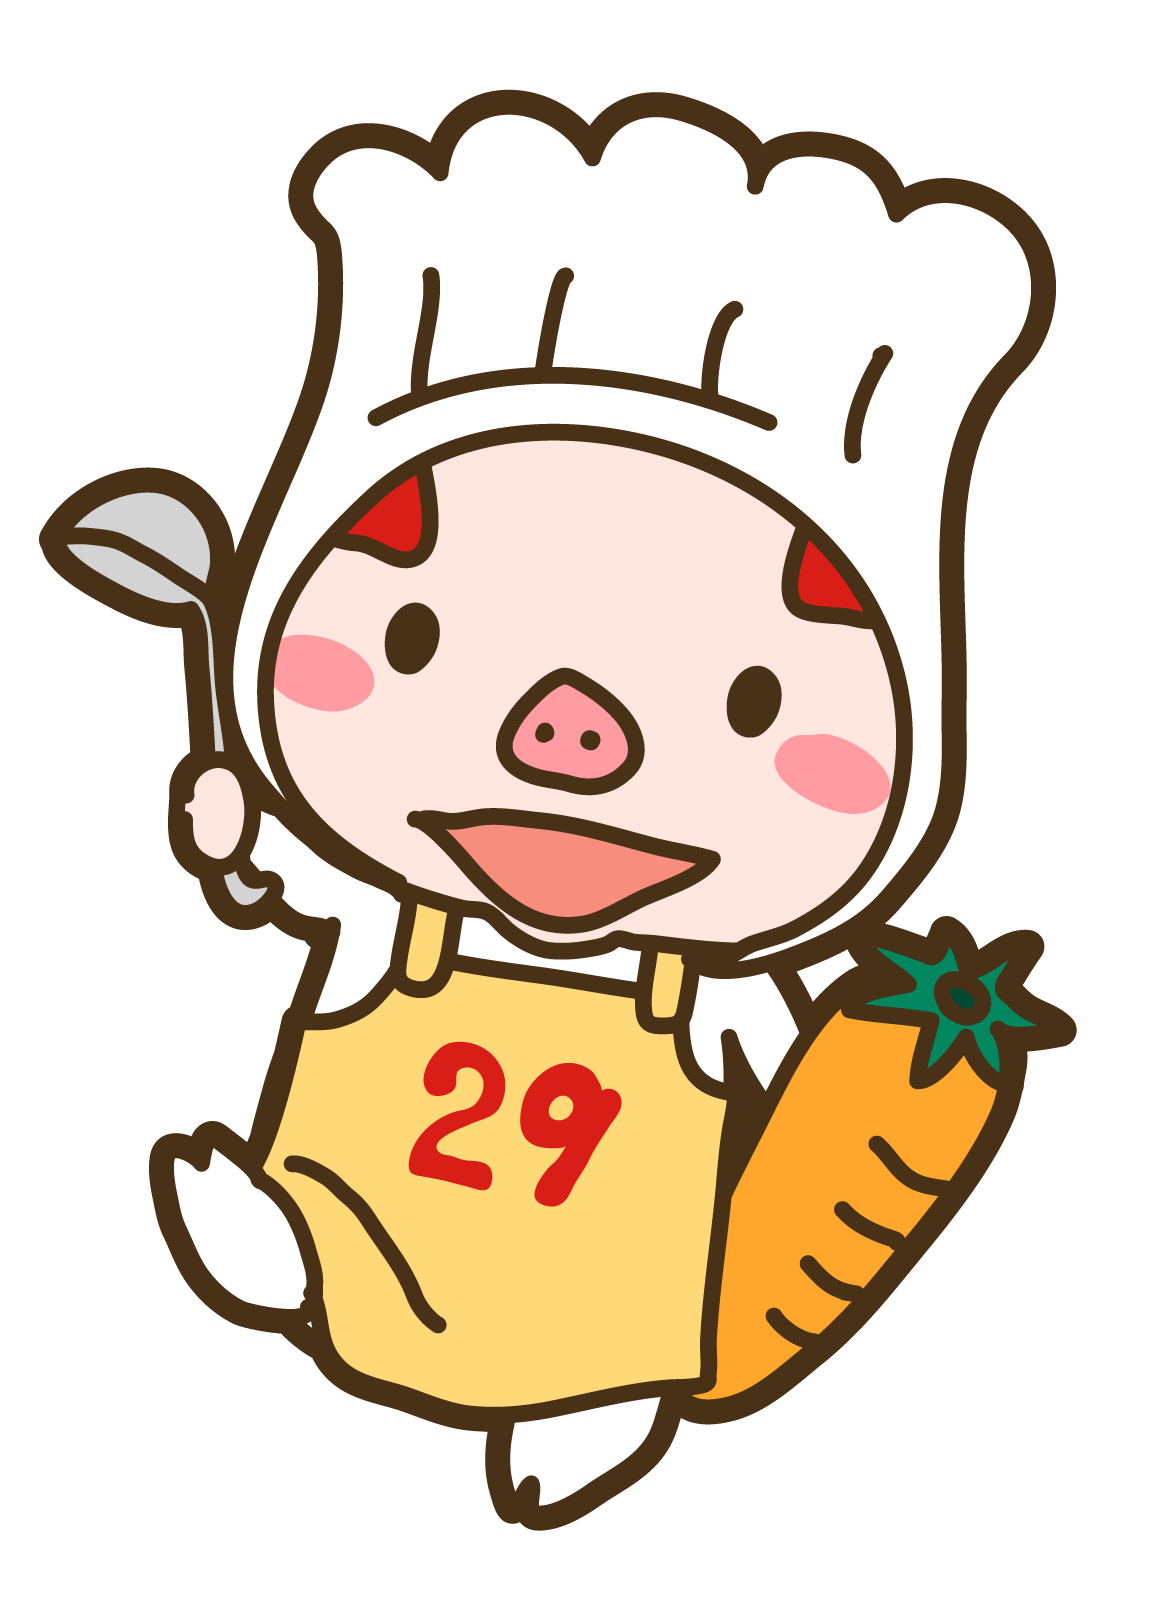 日本給食株式会社様のキャラクターデザイン 絵 日記 楽天ブログ